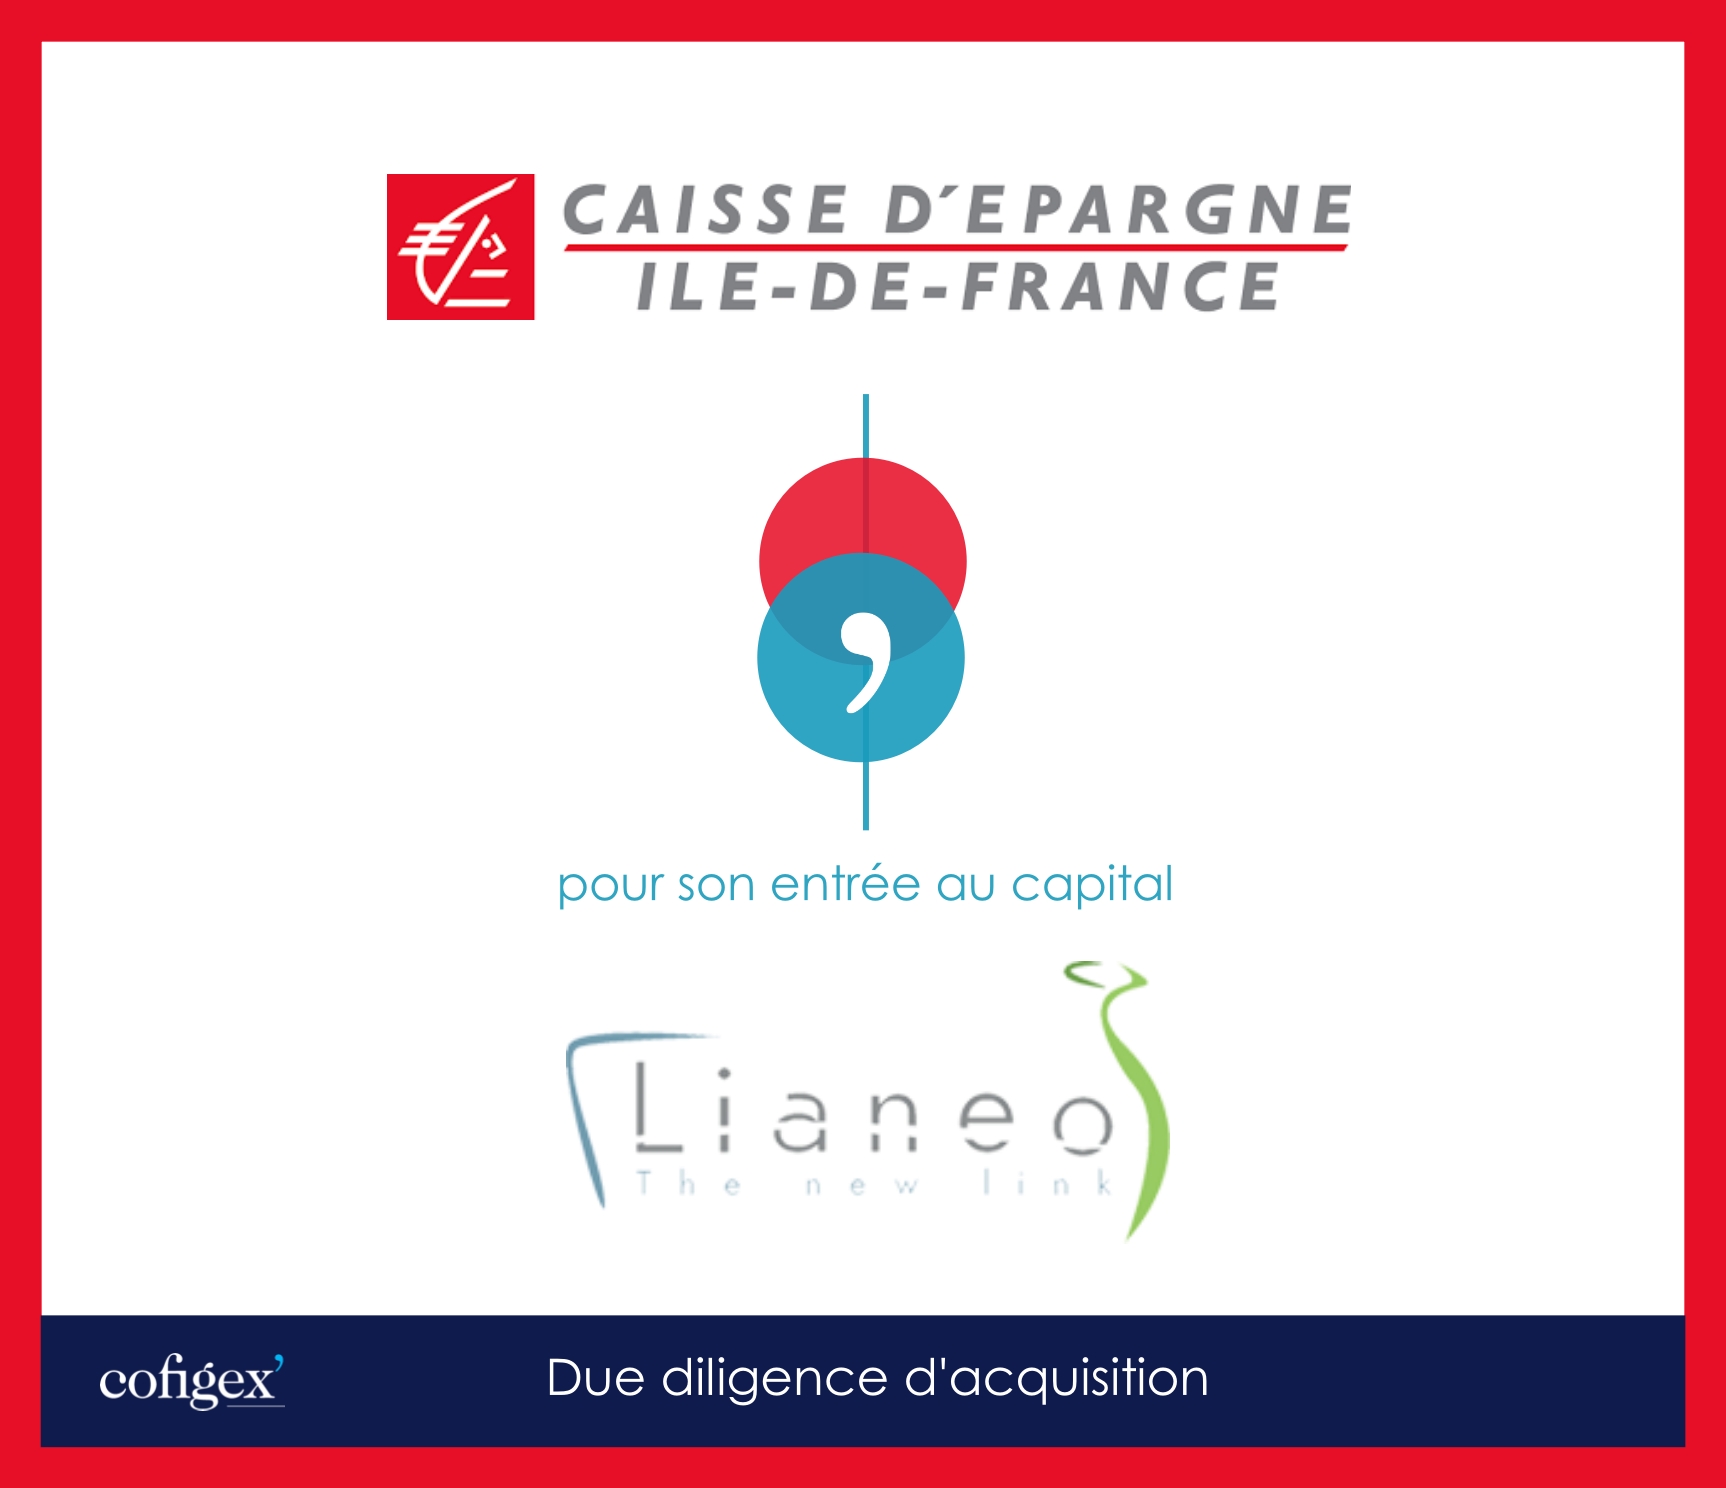 CAISSE D'EPARGNE ILE DE FRANCE - LIANEO